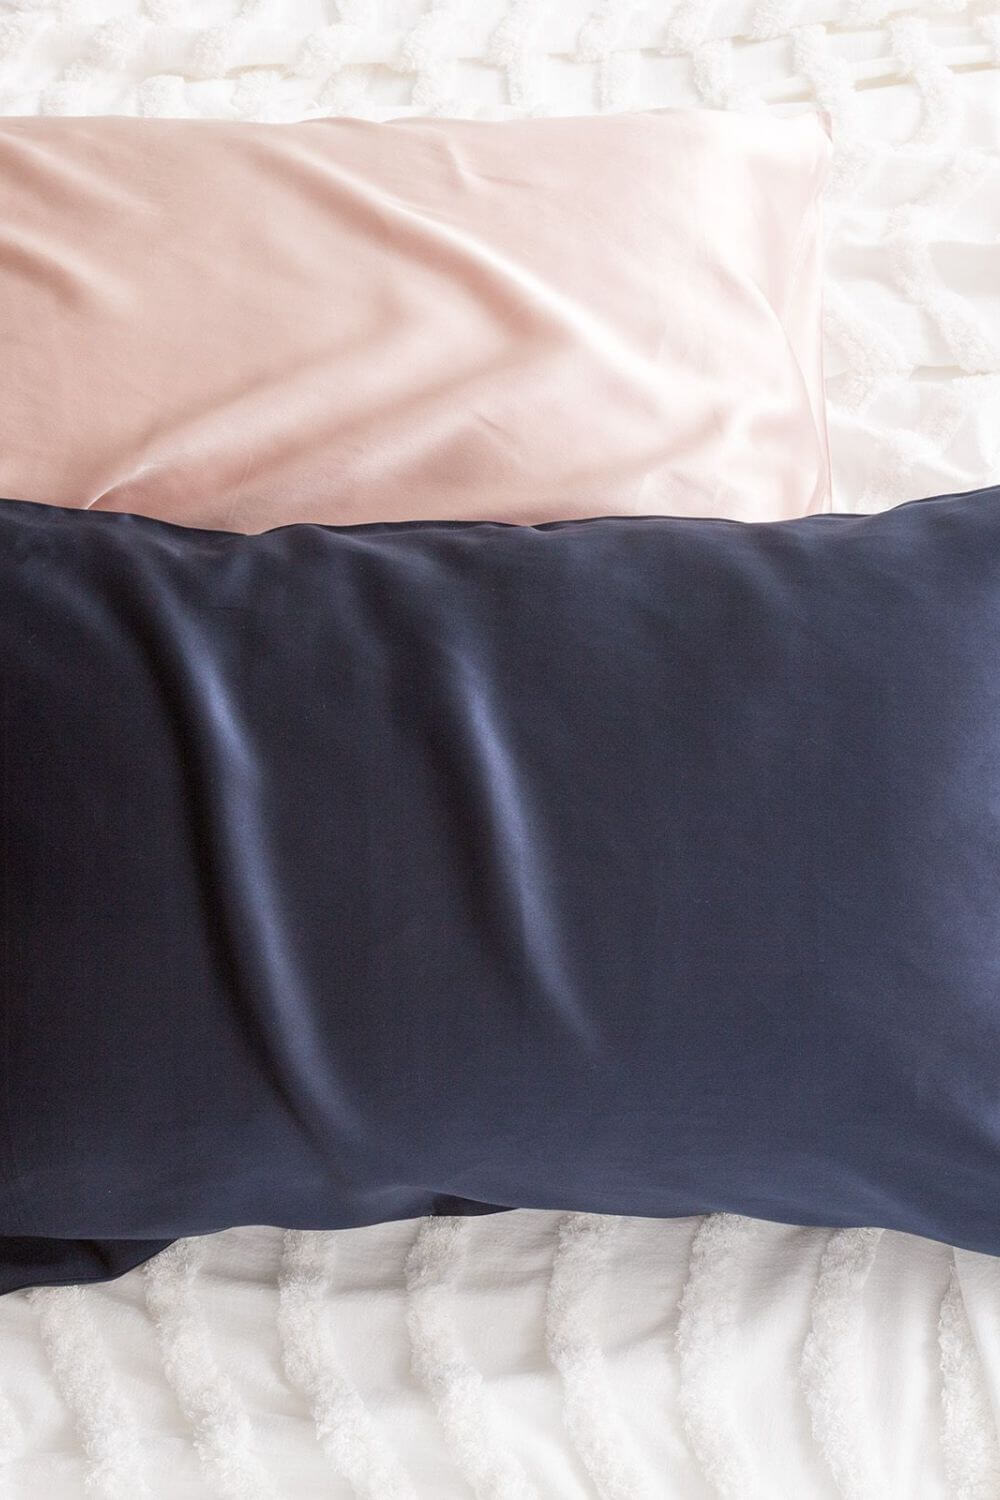 Renee Taylor 100% Mulberry Silk Standard Pillow Case